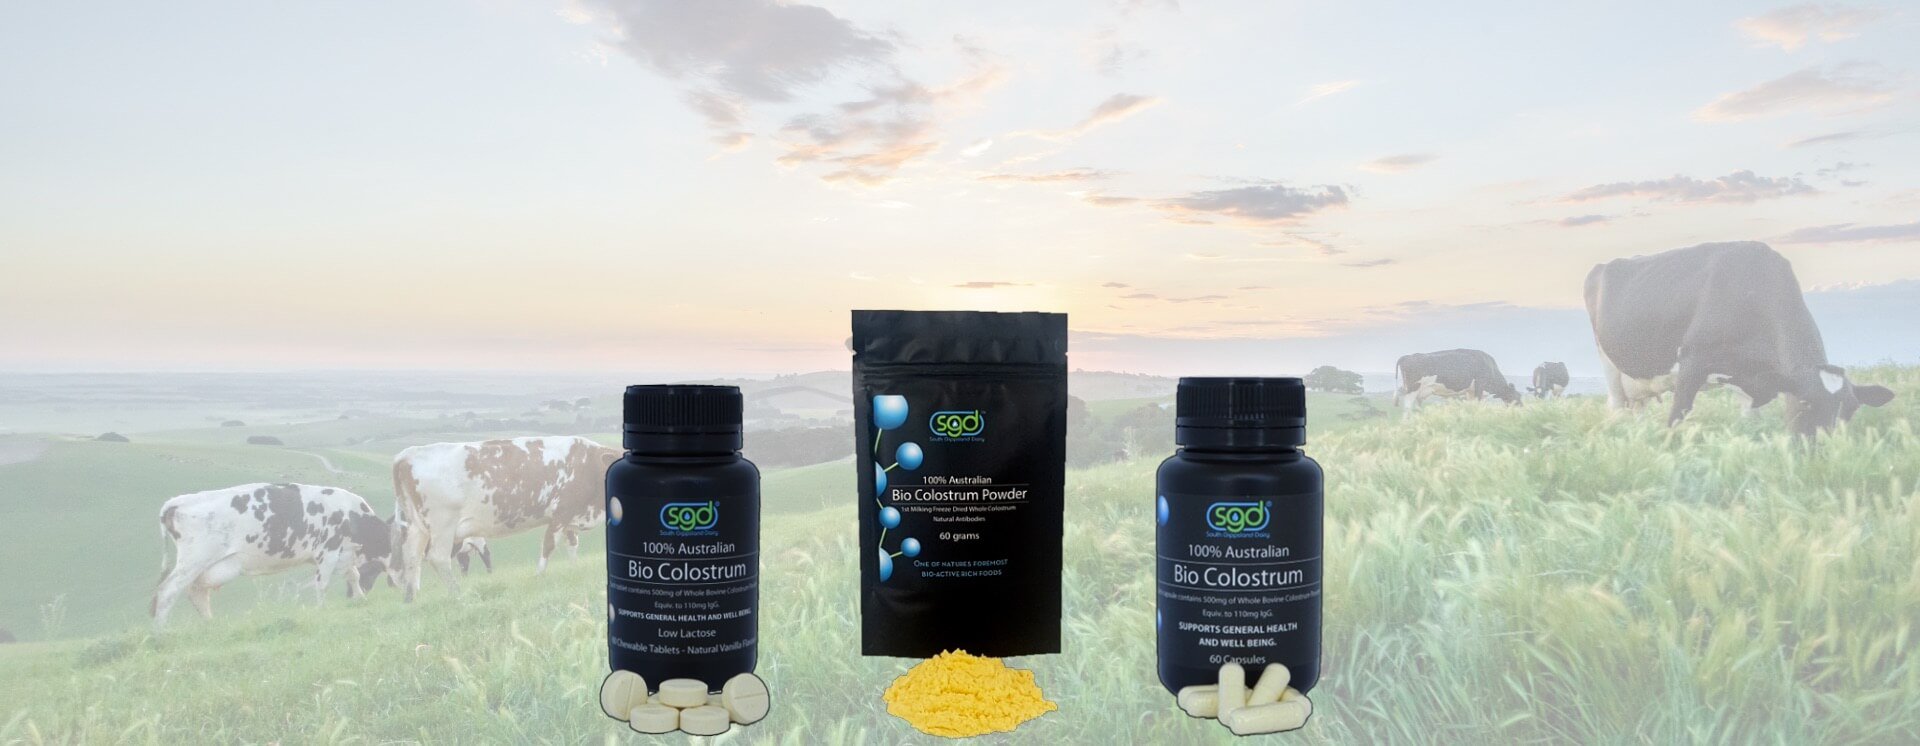 Revive Your Health With Premium Australian Bovine Bio-Colostrum